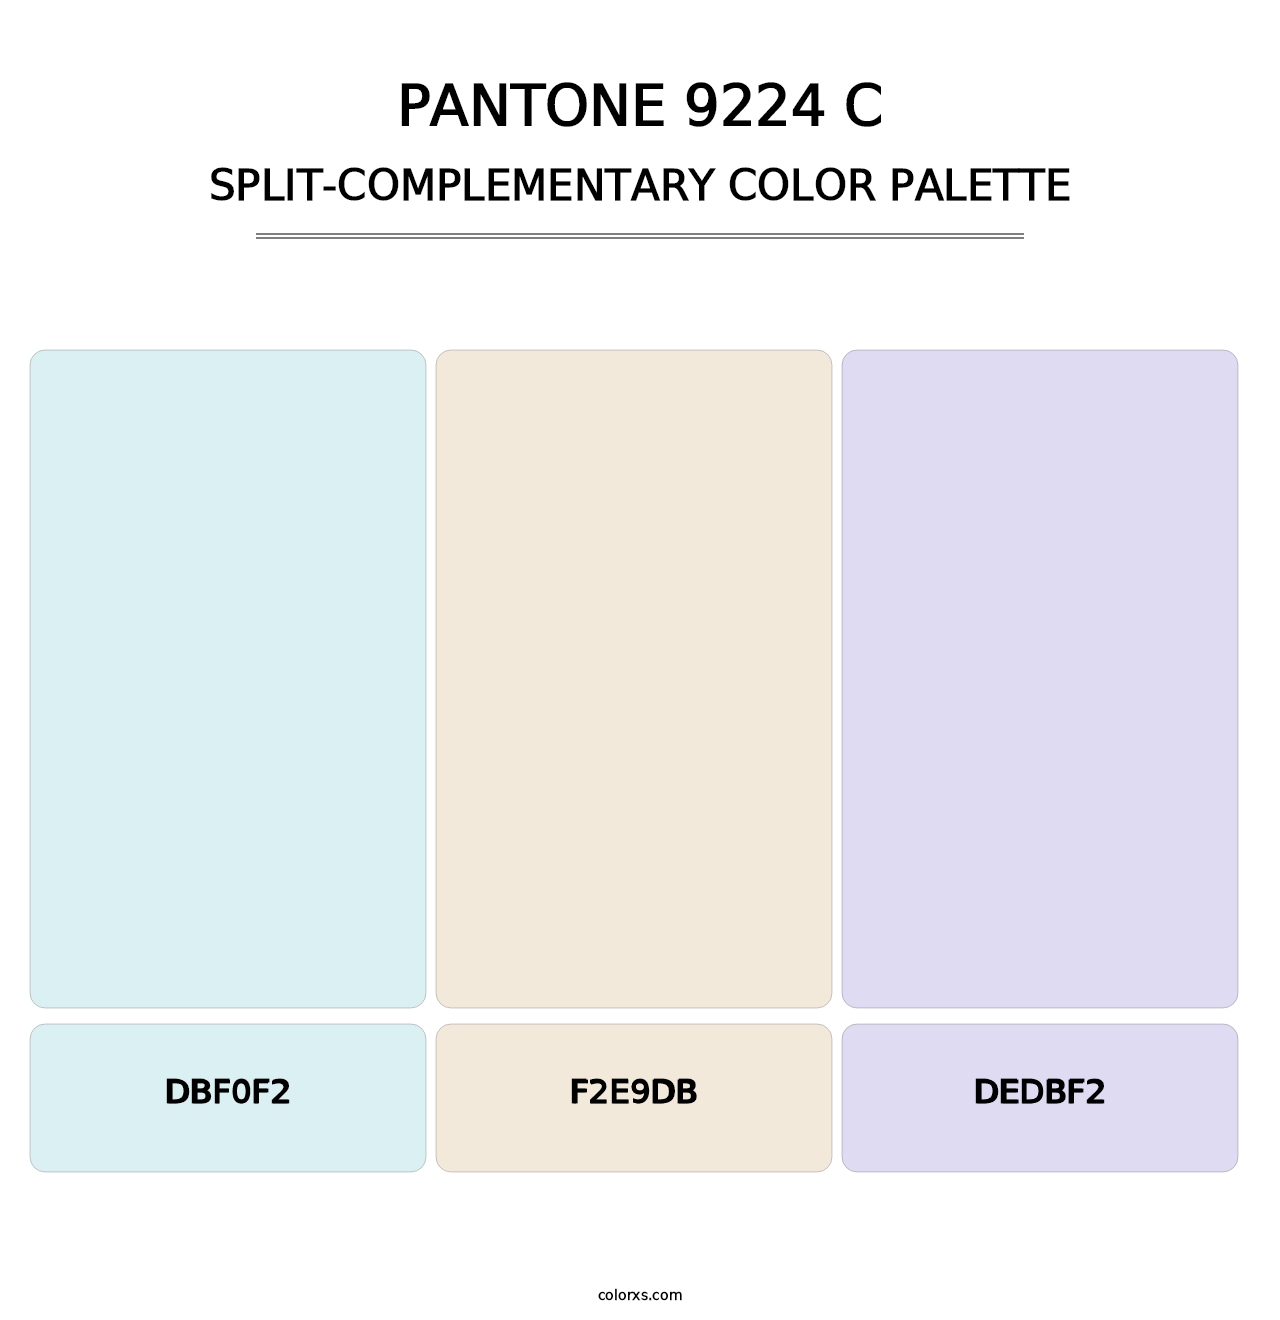 PANTONE 9224 C - Split-Complementary Color Palette